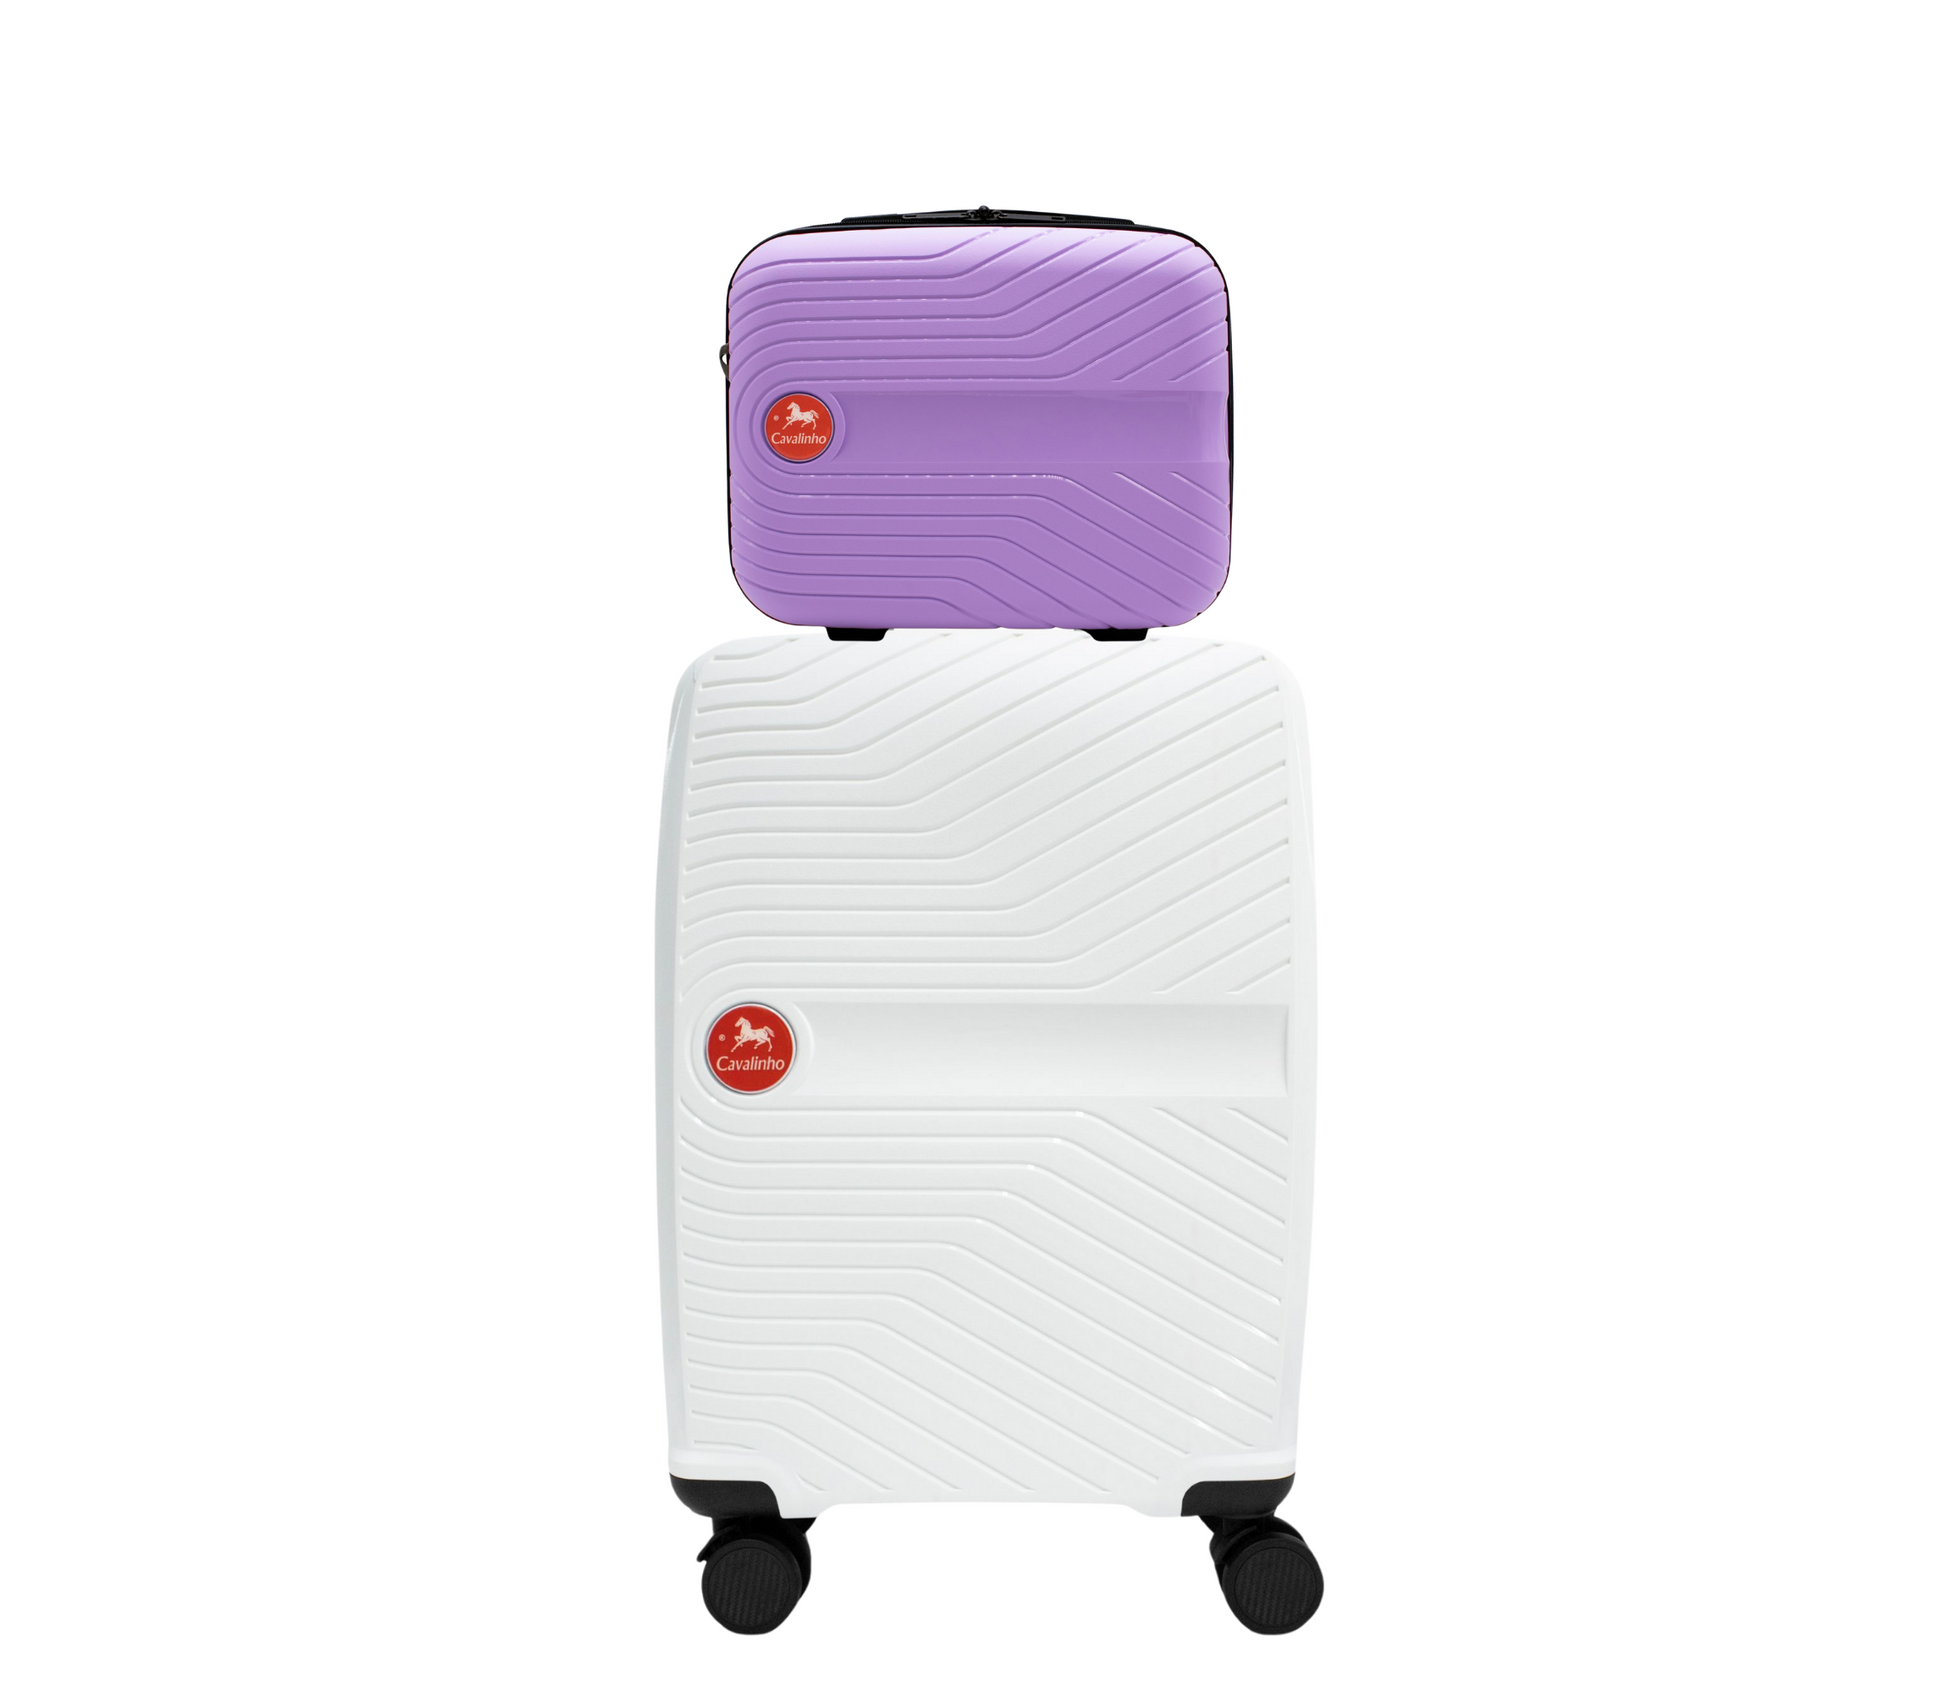 Cavalinho Canada & USA Colorful 2 Piece Luggage Set (15" & 19") - Lilac White - 68020004.3906.S1519._1